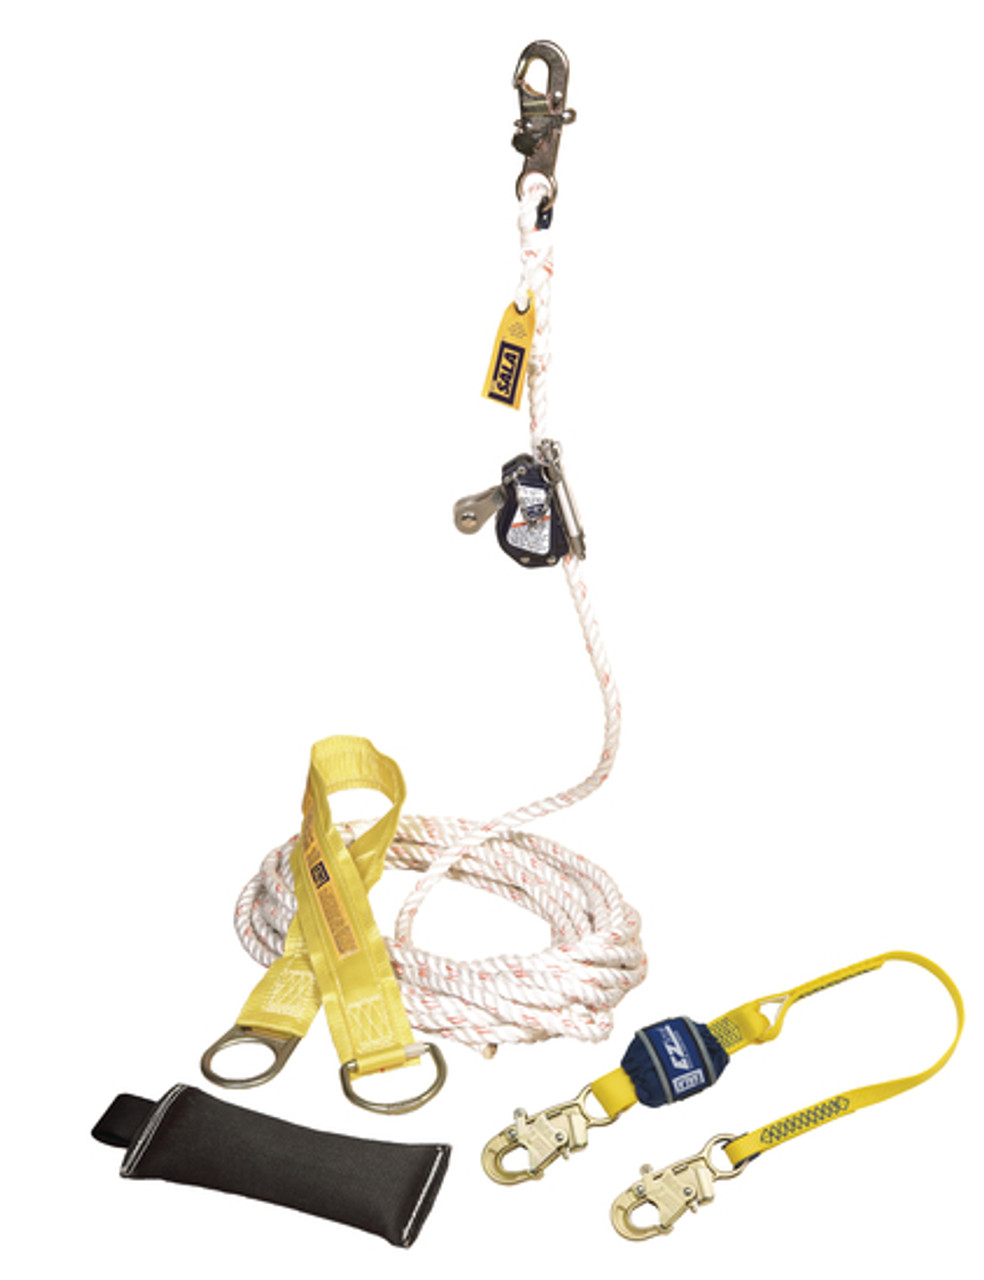 DBI SALA 5009082 Rope Grab Kit with 50' Lifeline, Lanyard